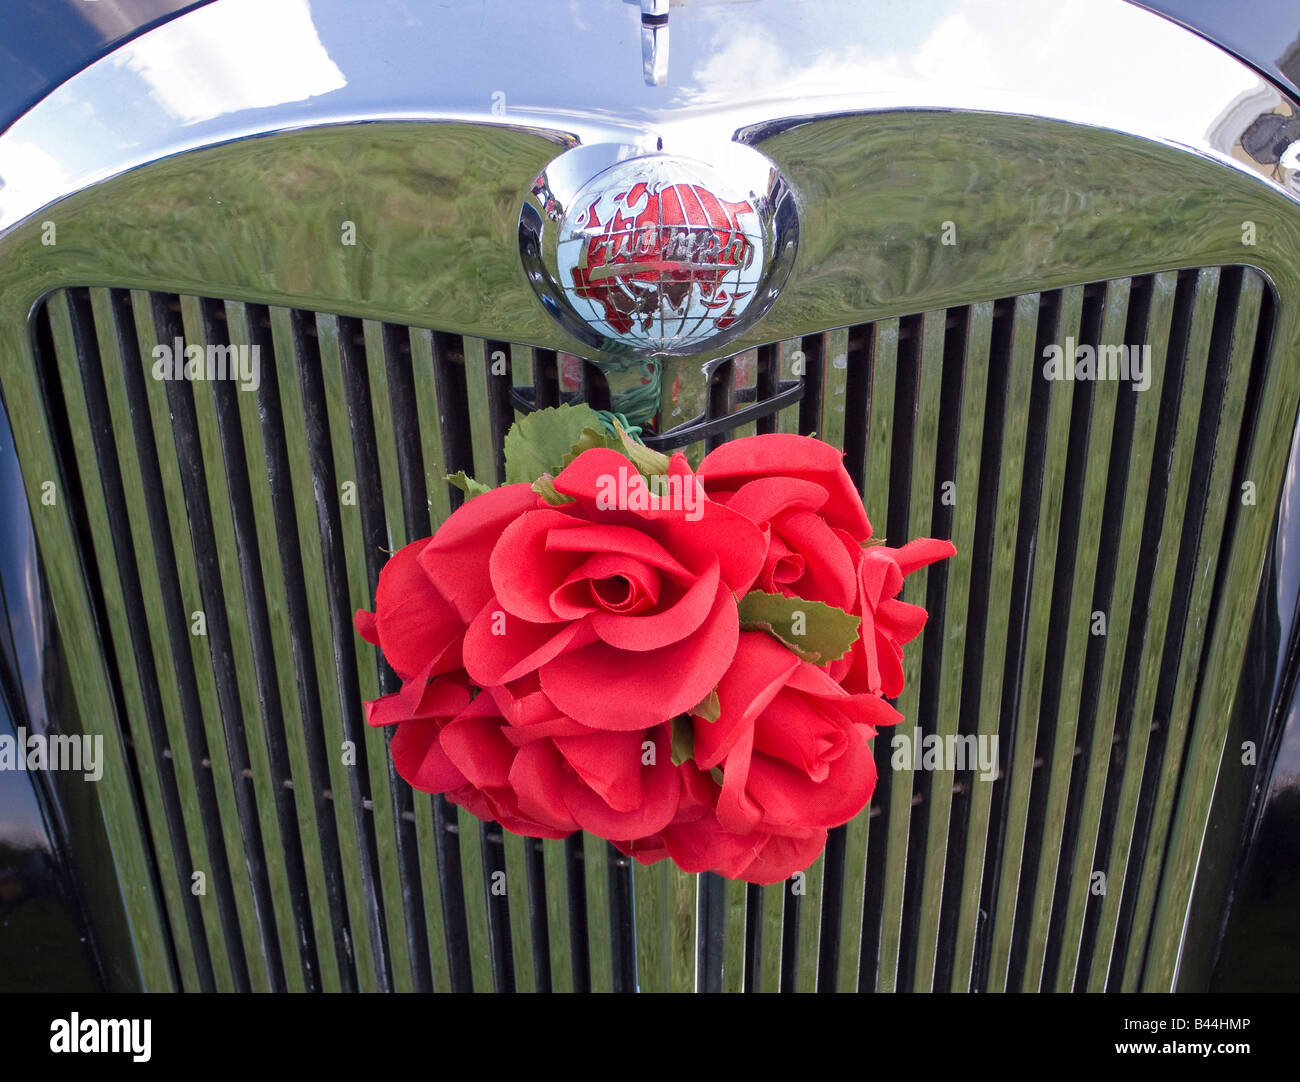 Der Frontgrill eines Triumph-Mayflower-Wagens von 1950, der für eine Hochzeit mit falschen roten Blumen verziert ist Stockfoto